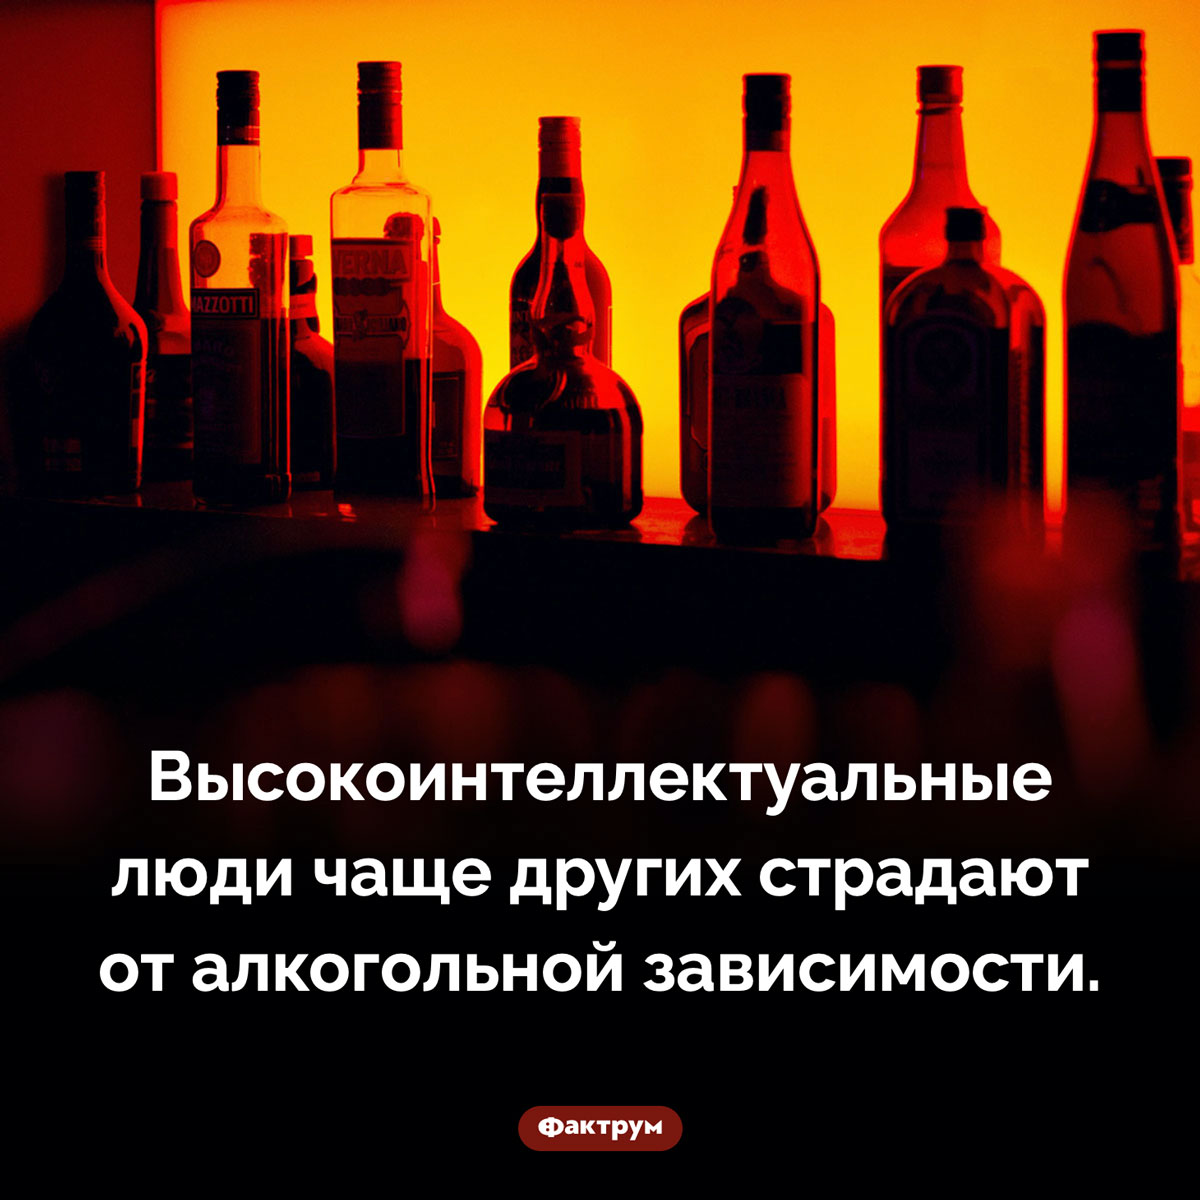 Развитый интеллект коррелирует с наличием алкогольной зависимости. Высокоинтеллектуальные люди чаще других страдают от алкогольной зависимости.